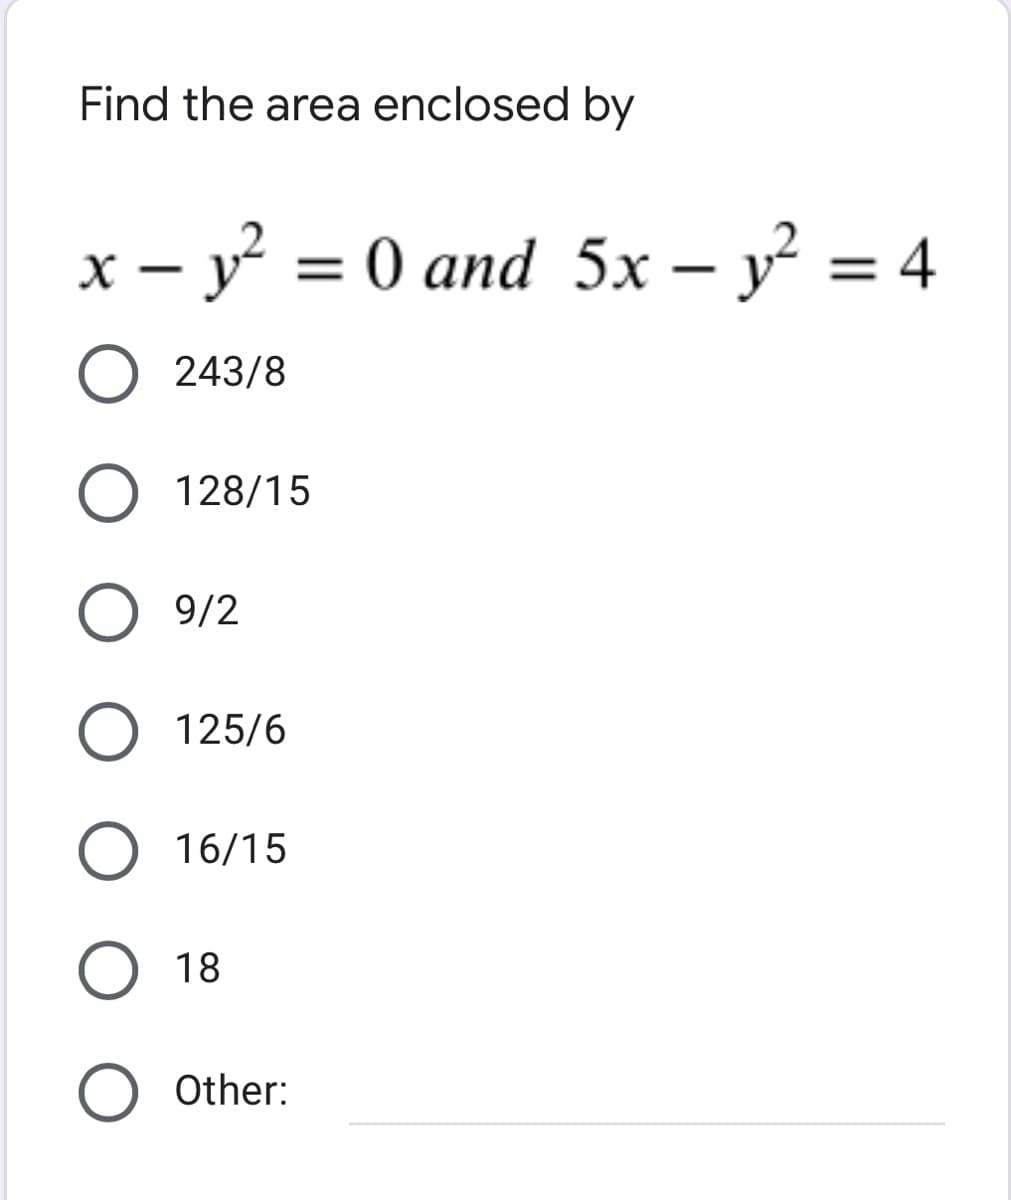 Find the area enclosed by
x – y = 0 and 5x – y = 4
-
O 243/8
128/15
9/2
O 125/6
16/15
O 18
O Other:
